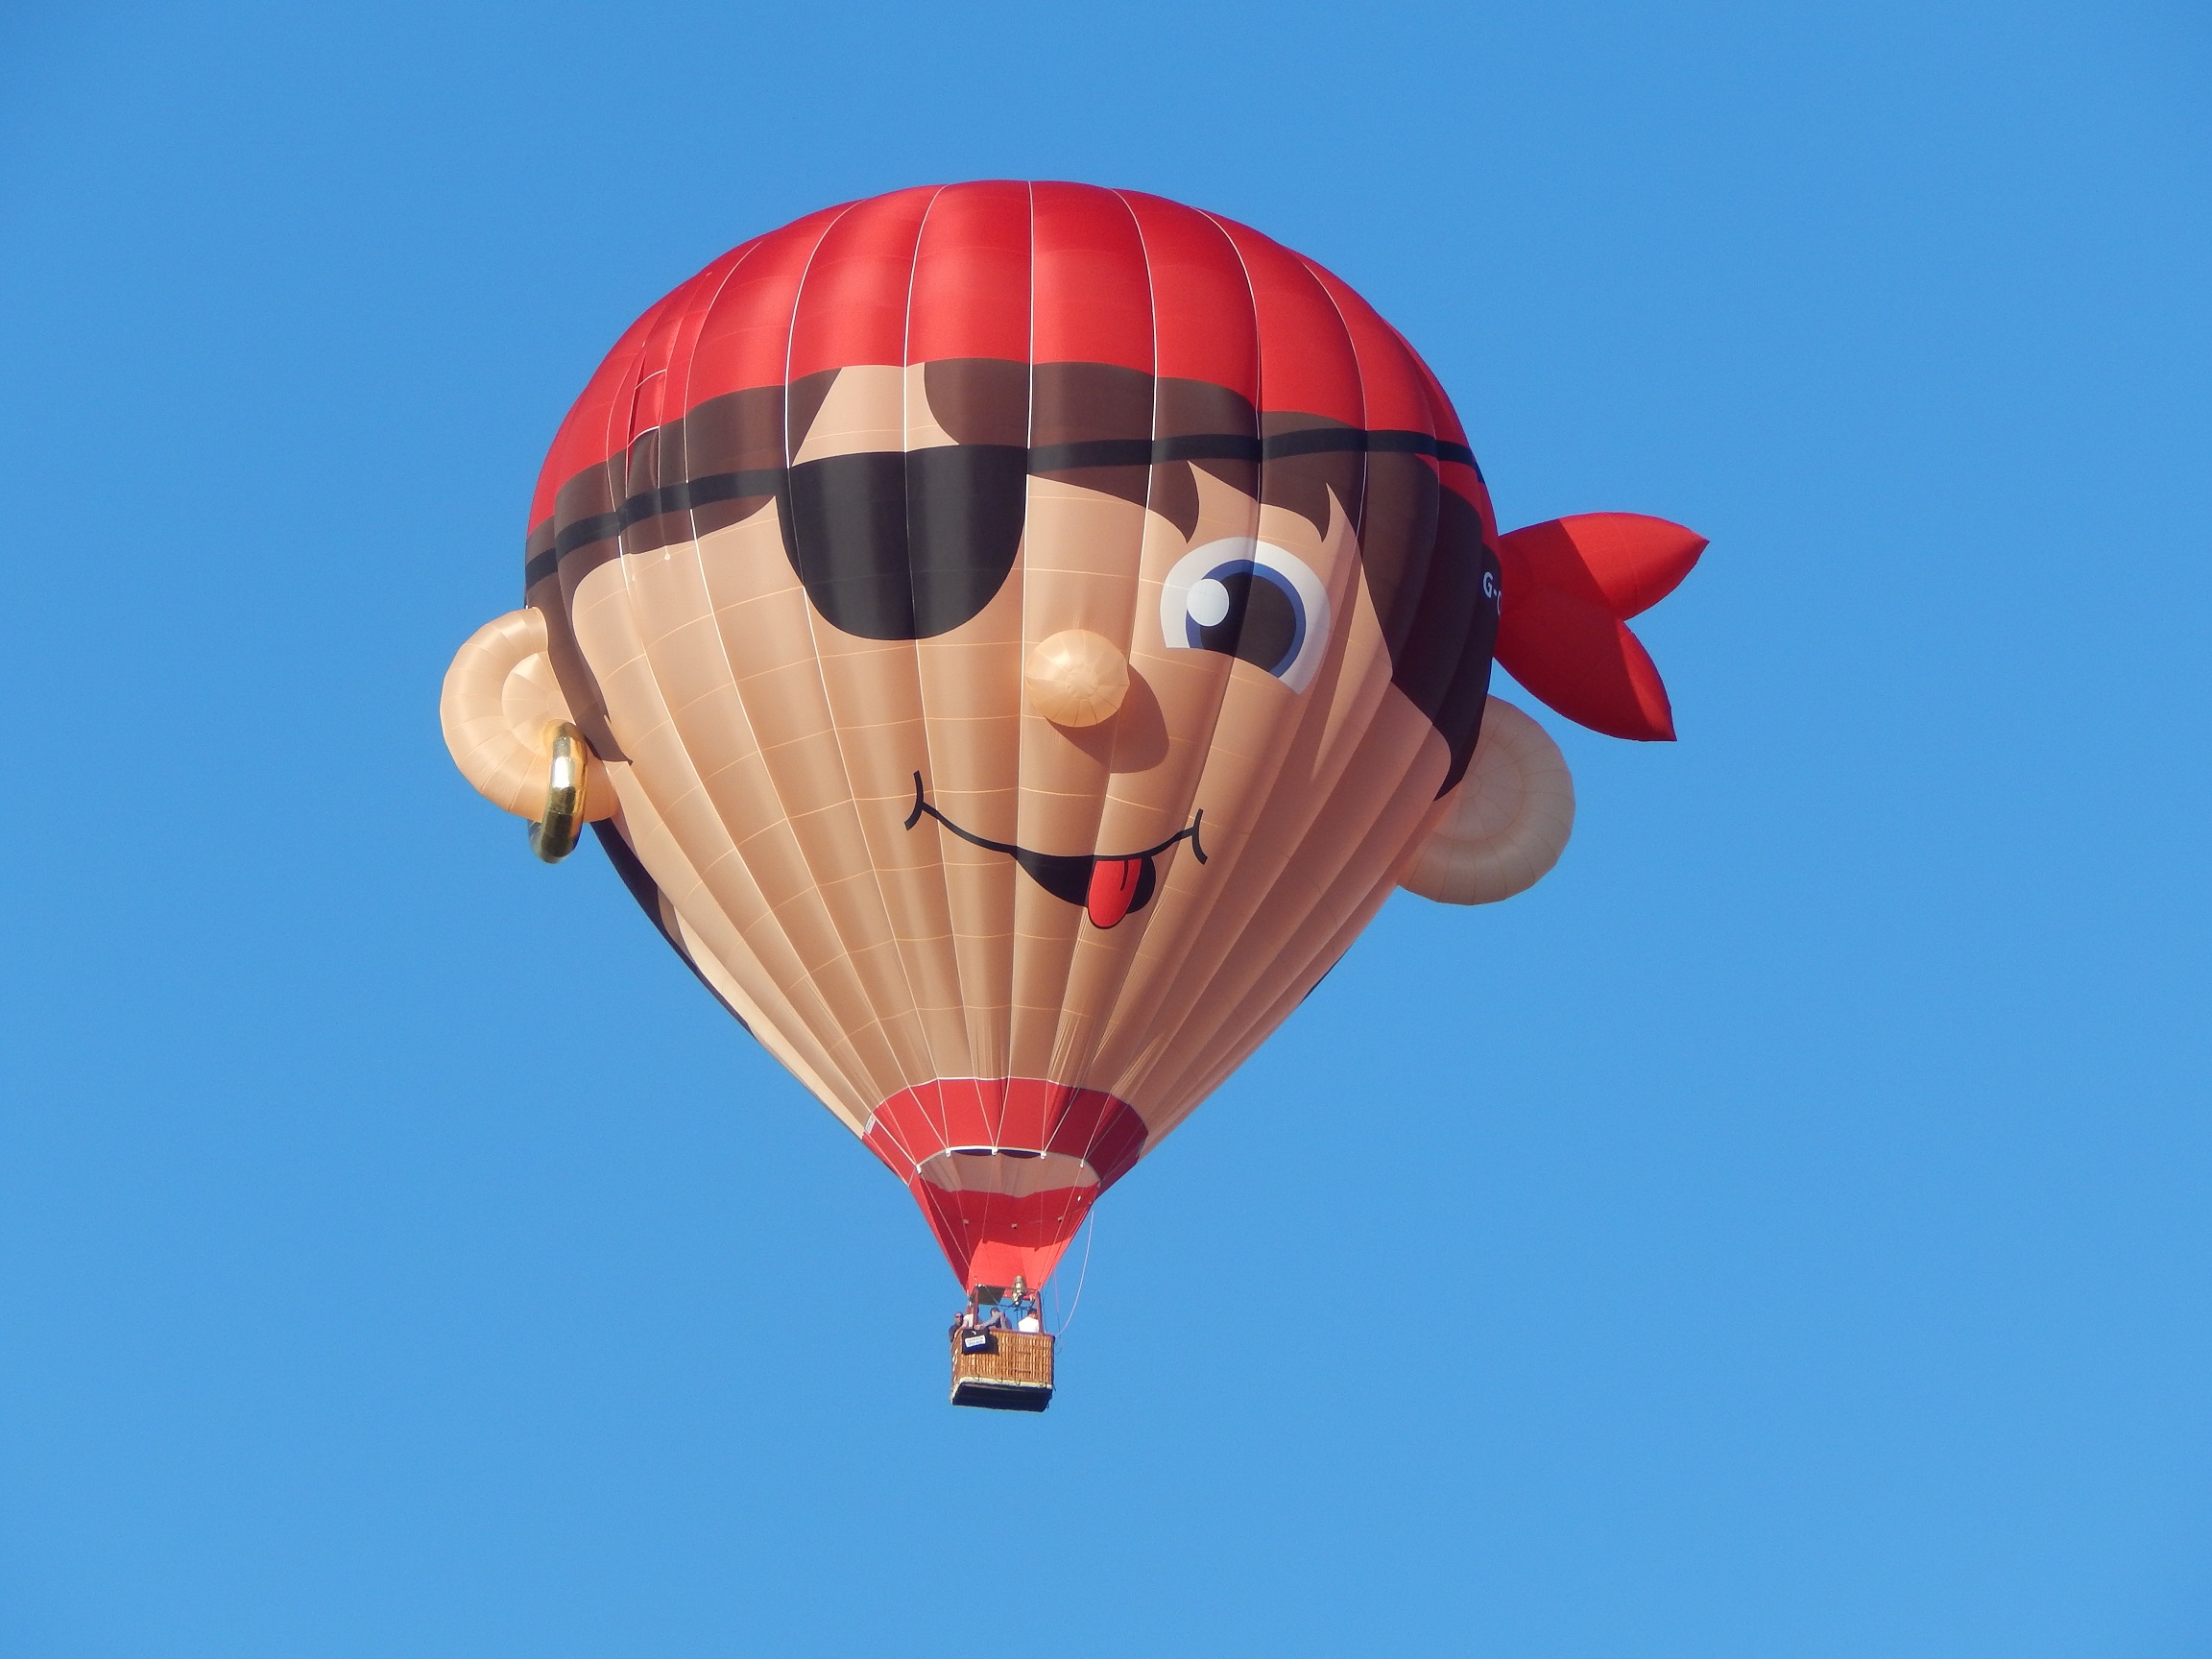 Hot air balloon, Hot air balloons, balloons, ballooning, hot ...